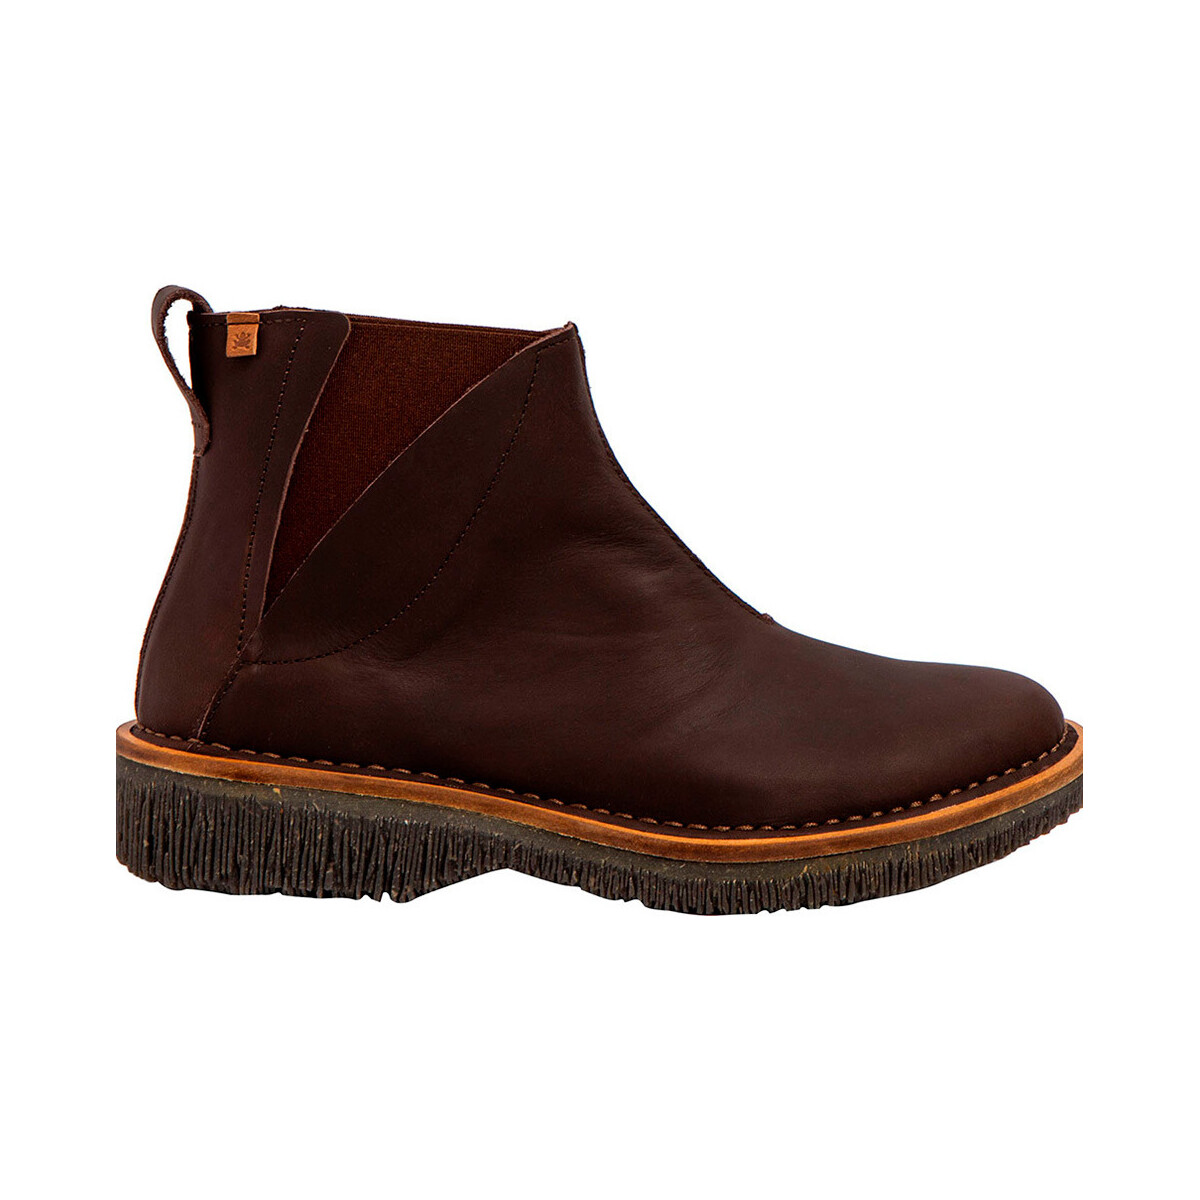 Schoenen Dames Low boots El Naturalista 255703120005 Bruin